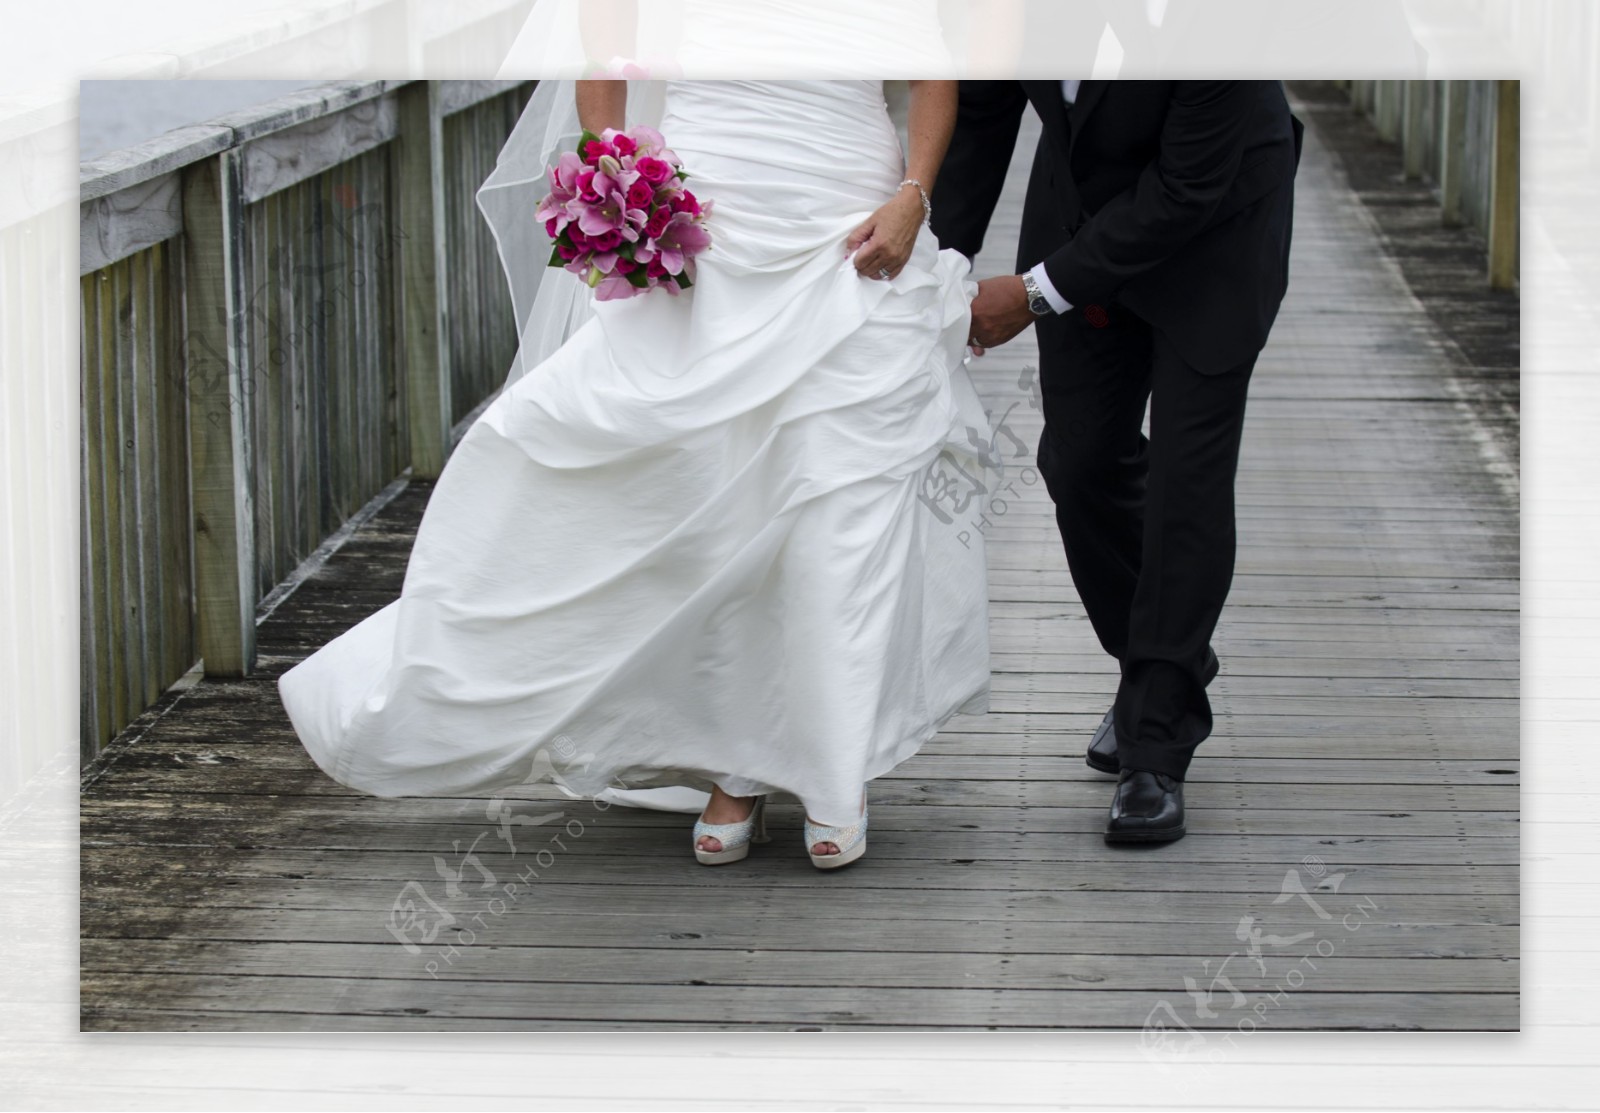 走路的新婚人物摄影图片